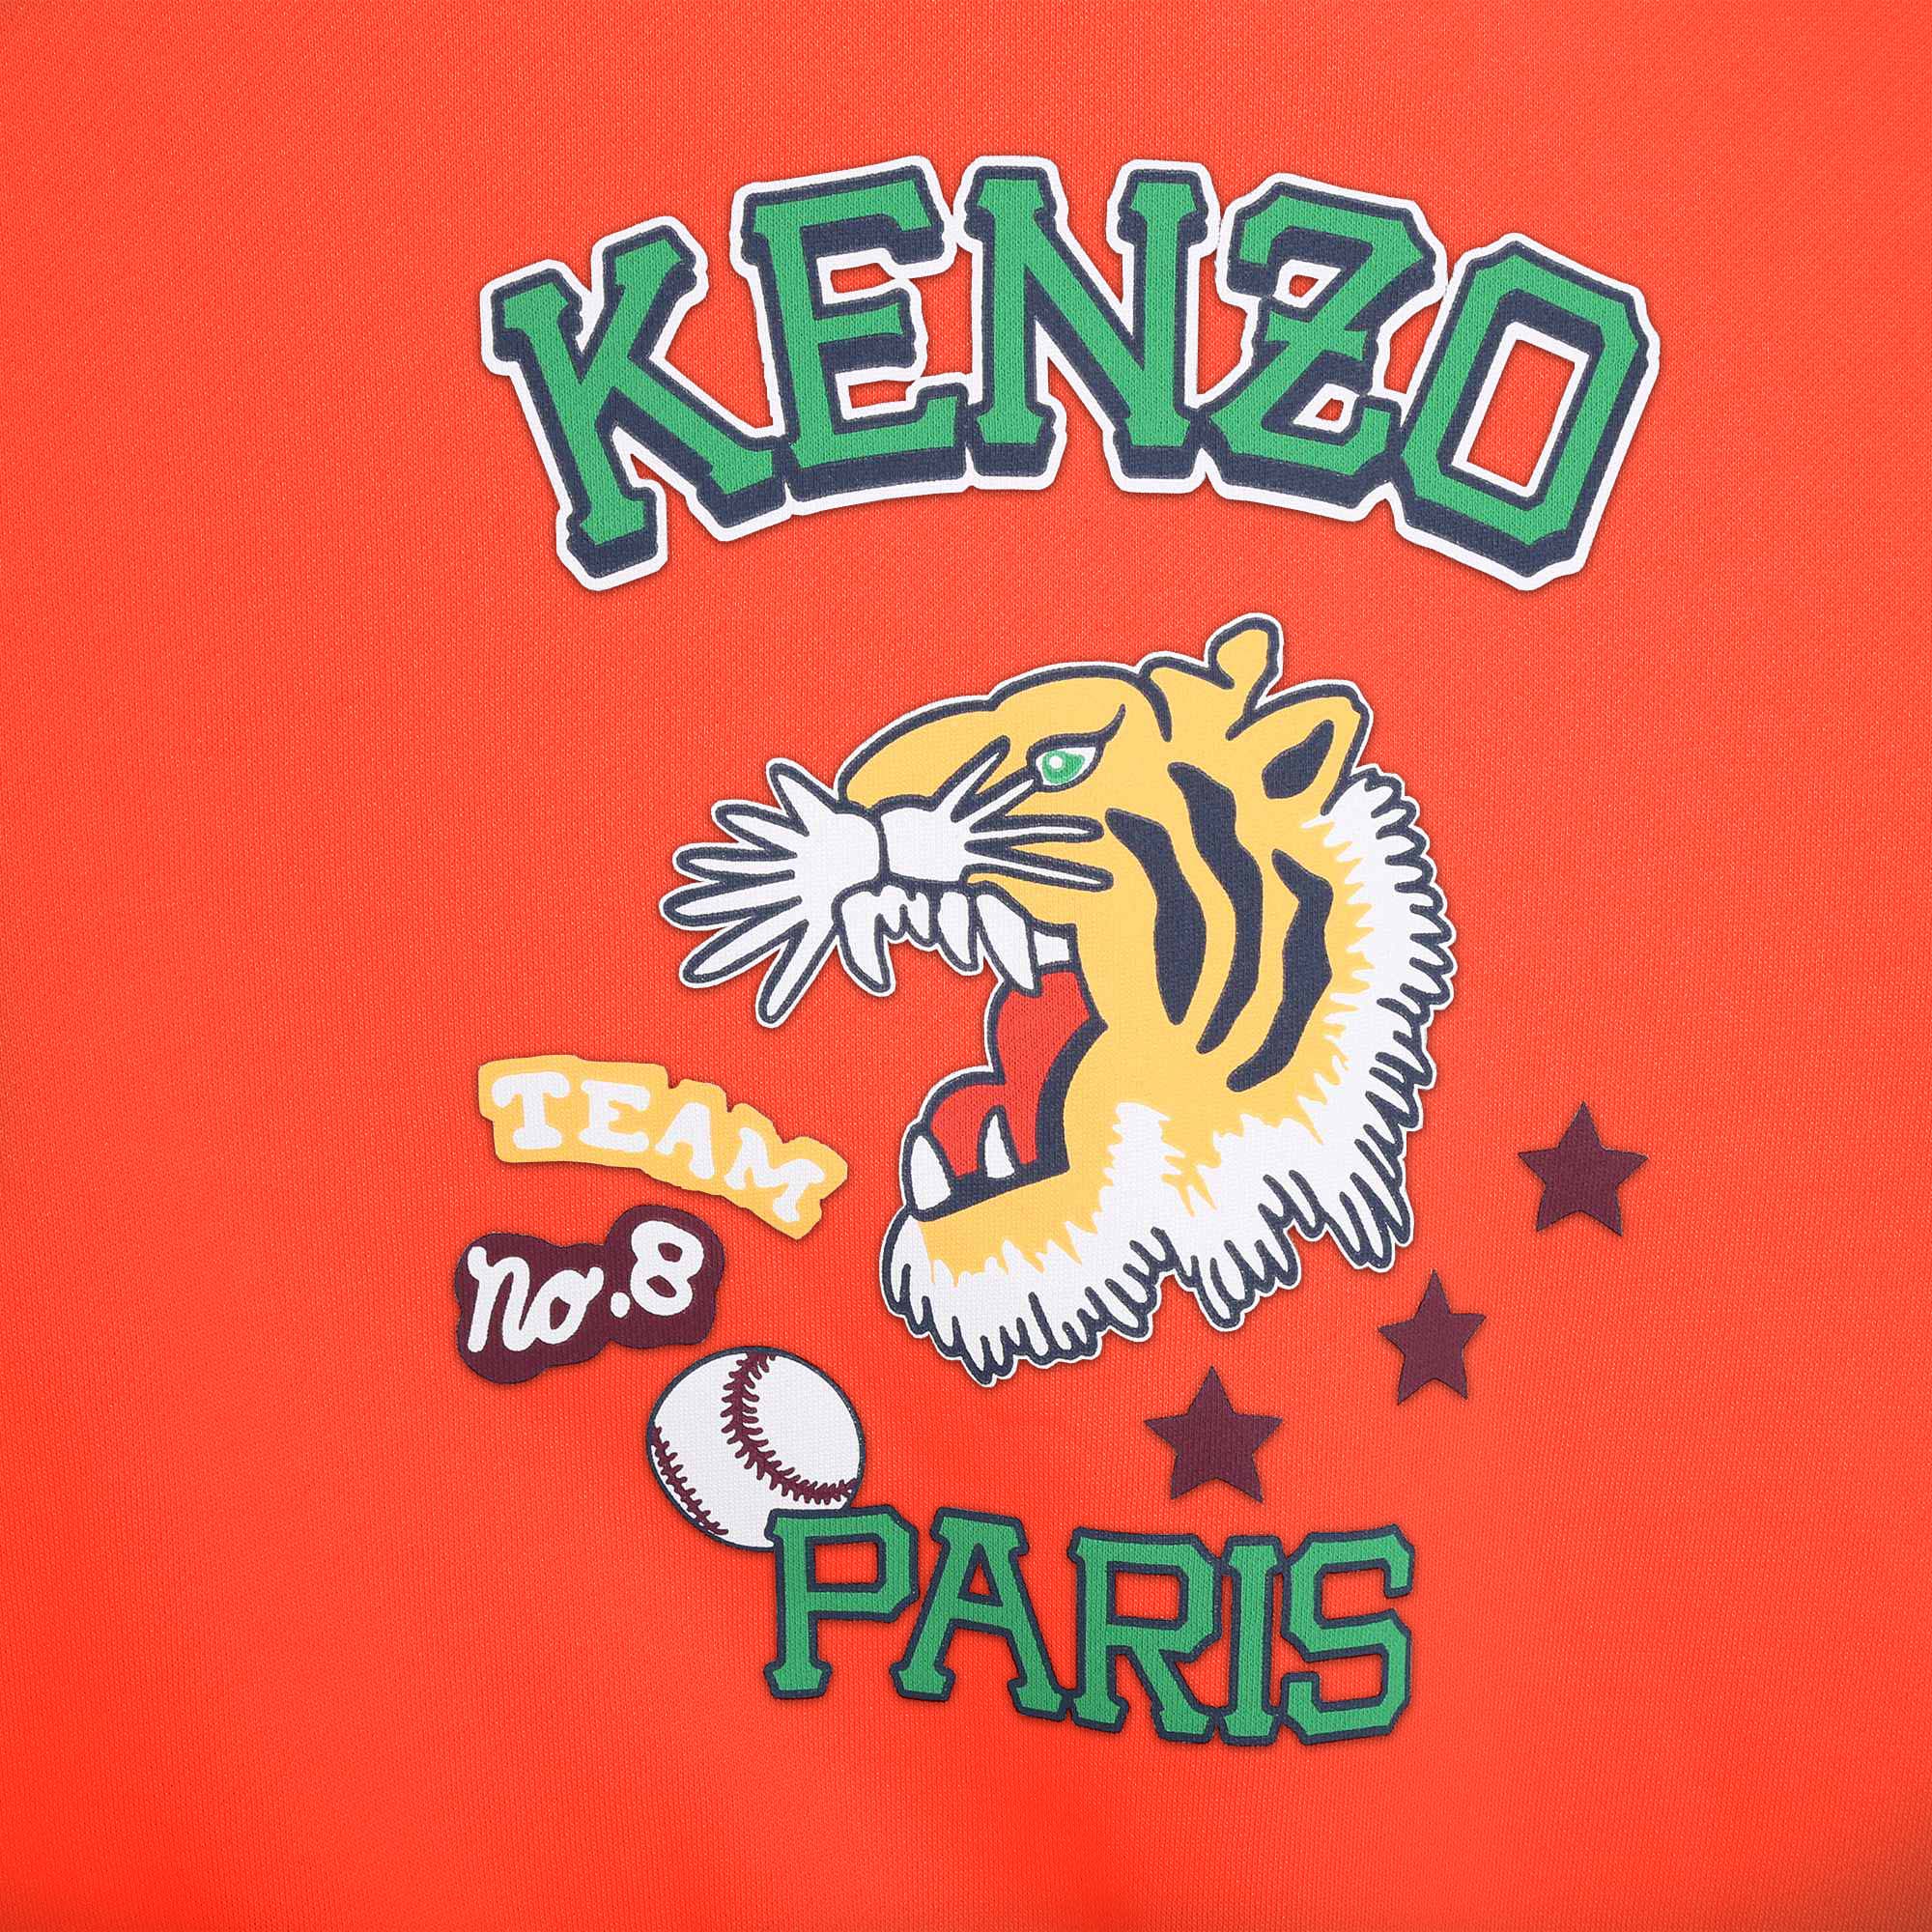 Brushed-fleece sweatshirt KENZO KIDS for BOY